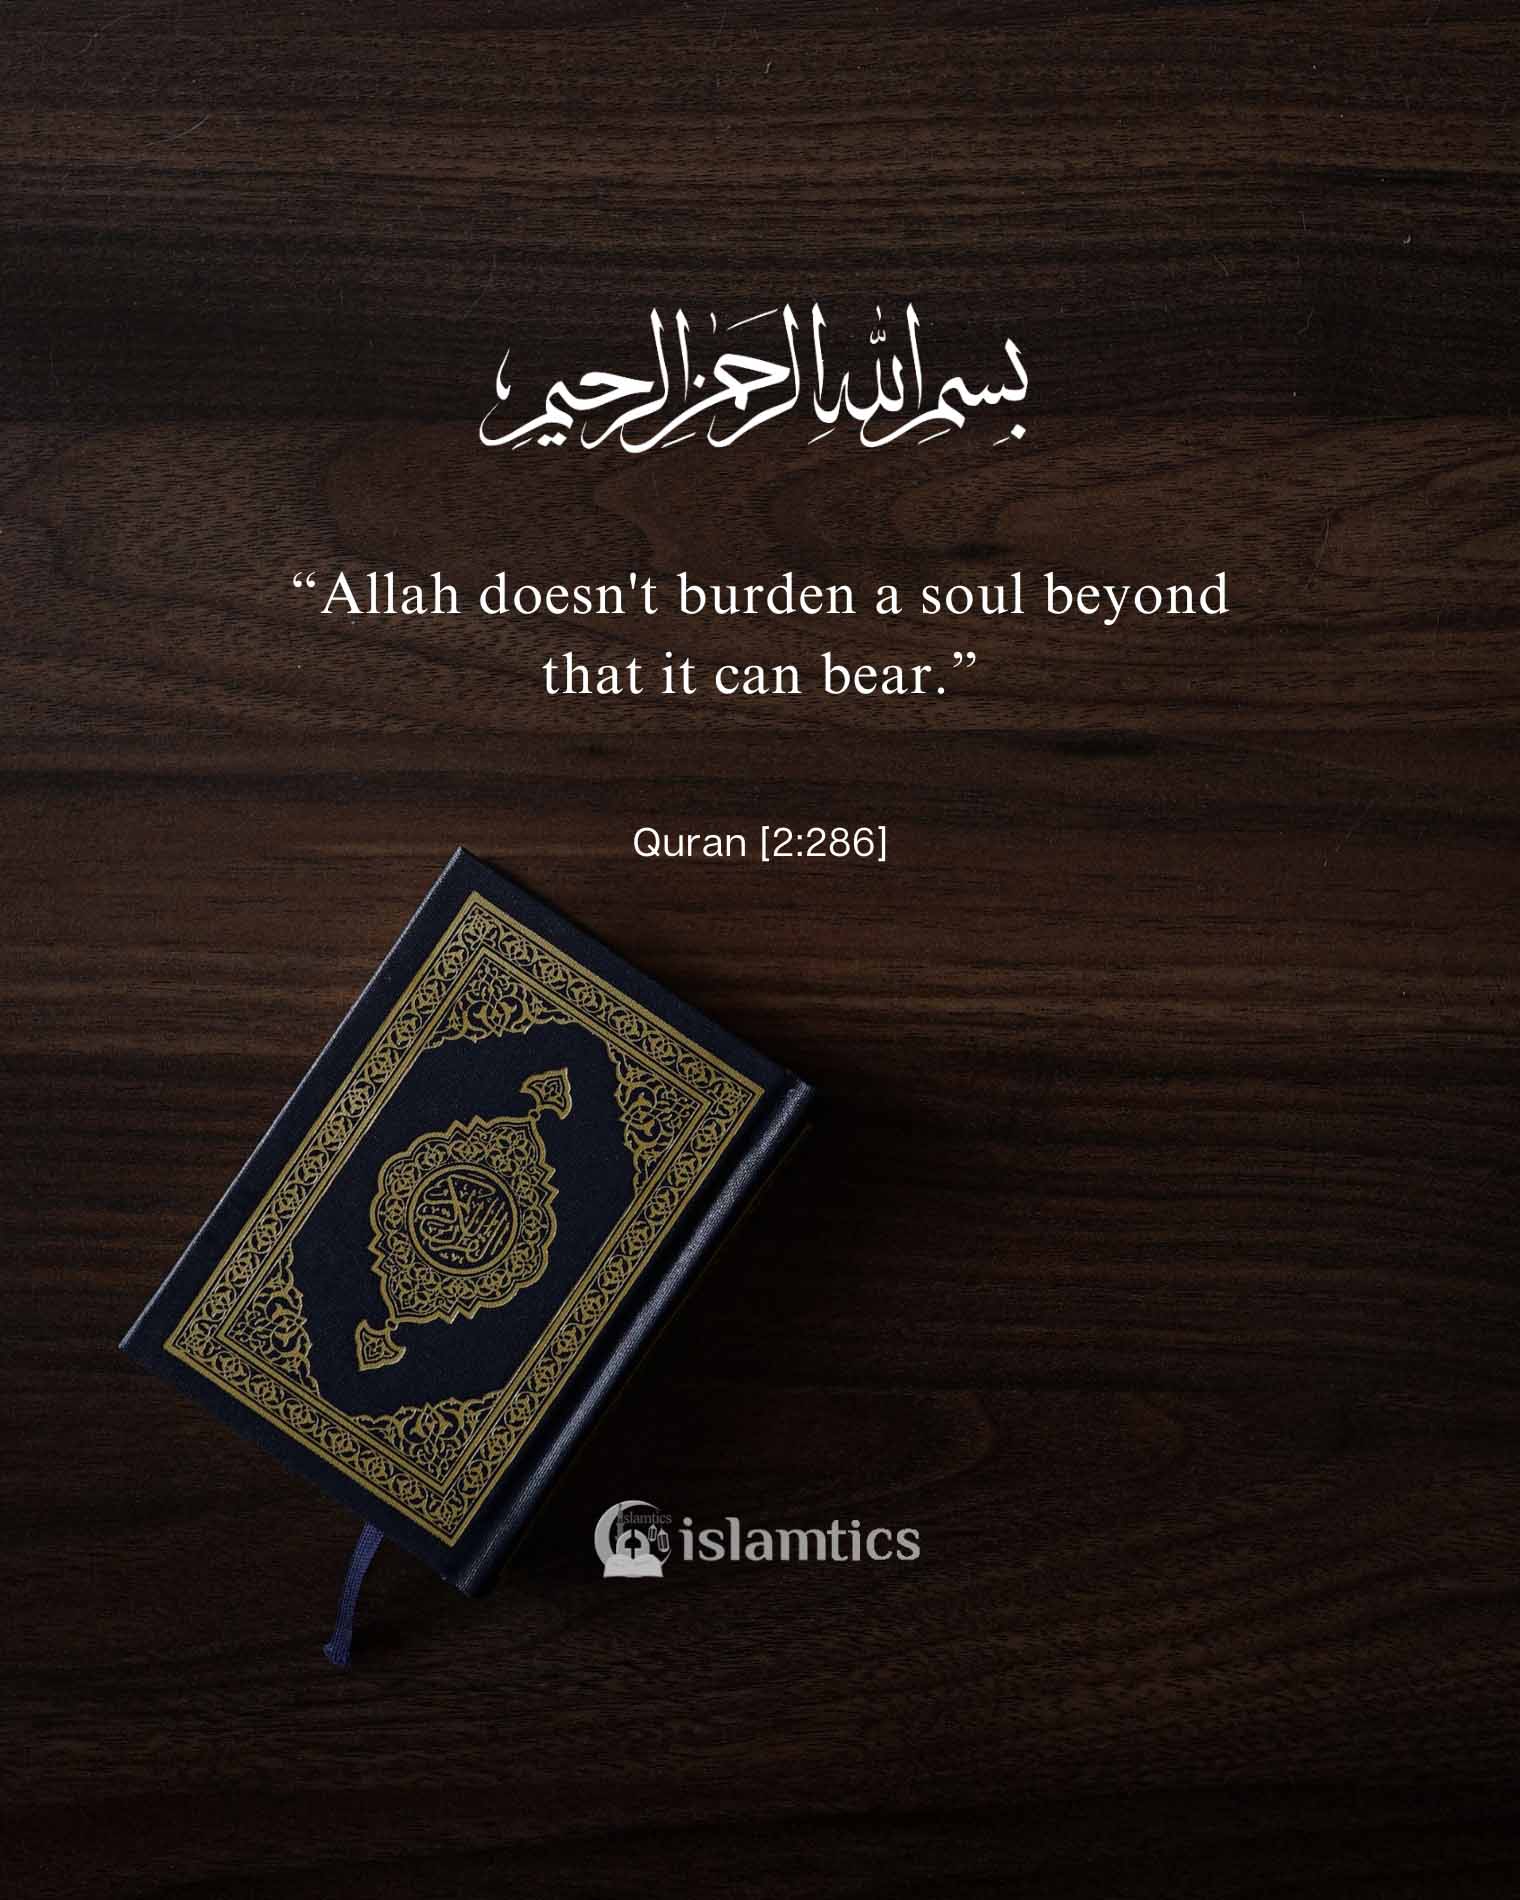 “Allah doesn’t burden a soul beyond that it can bear.”